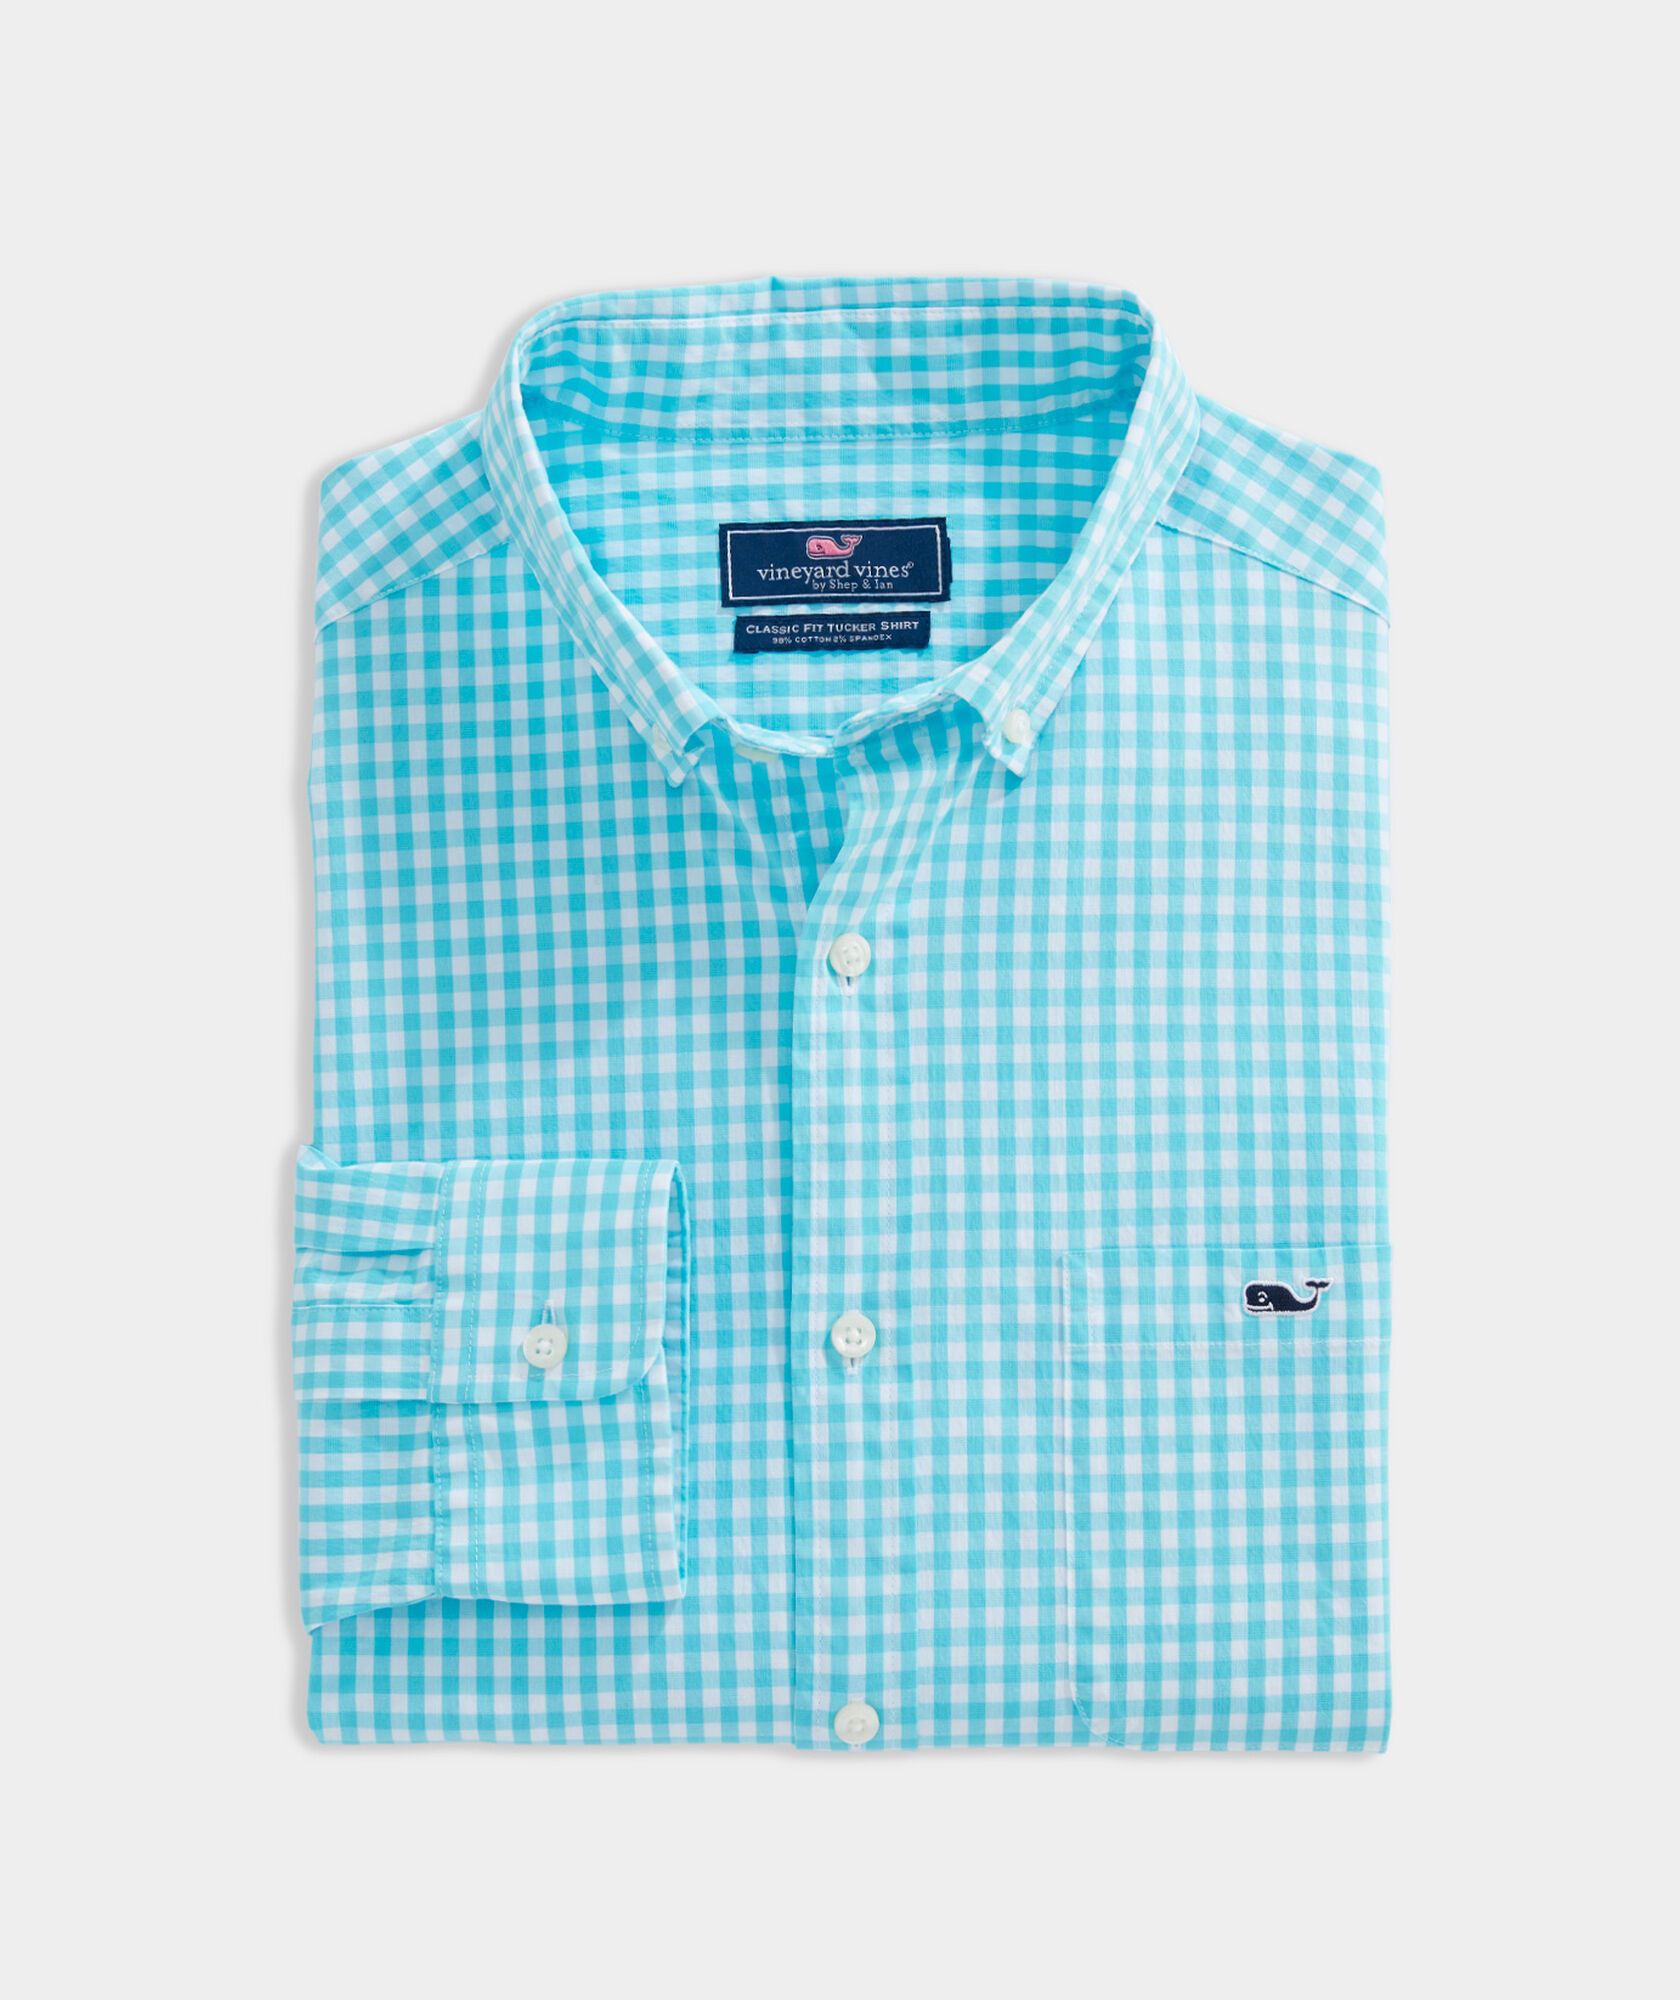 Men's Luxury Slim Dress Shirt Summer Short Sleeved Formal Shirt Button Down Tops